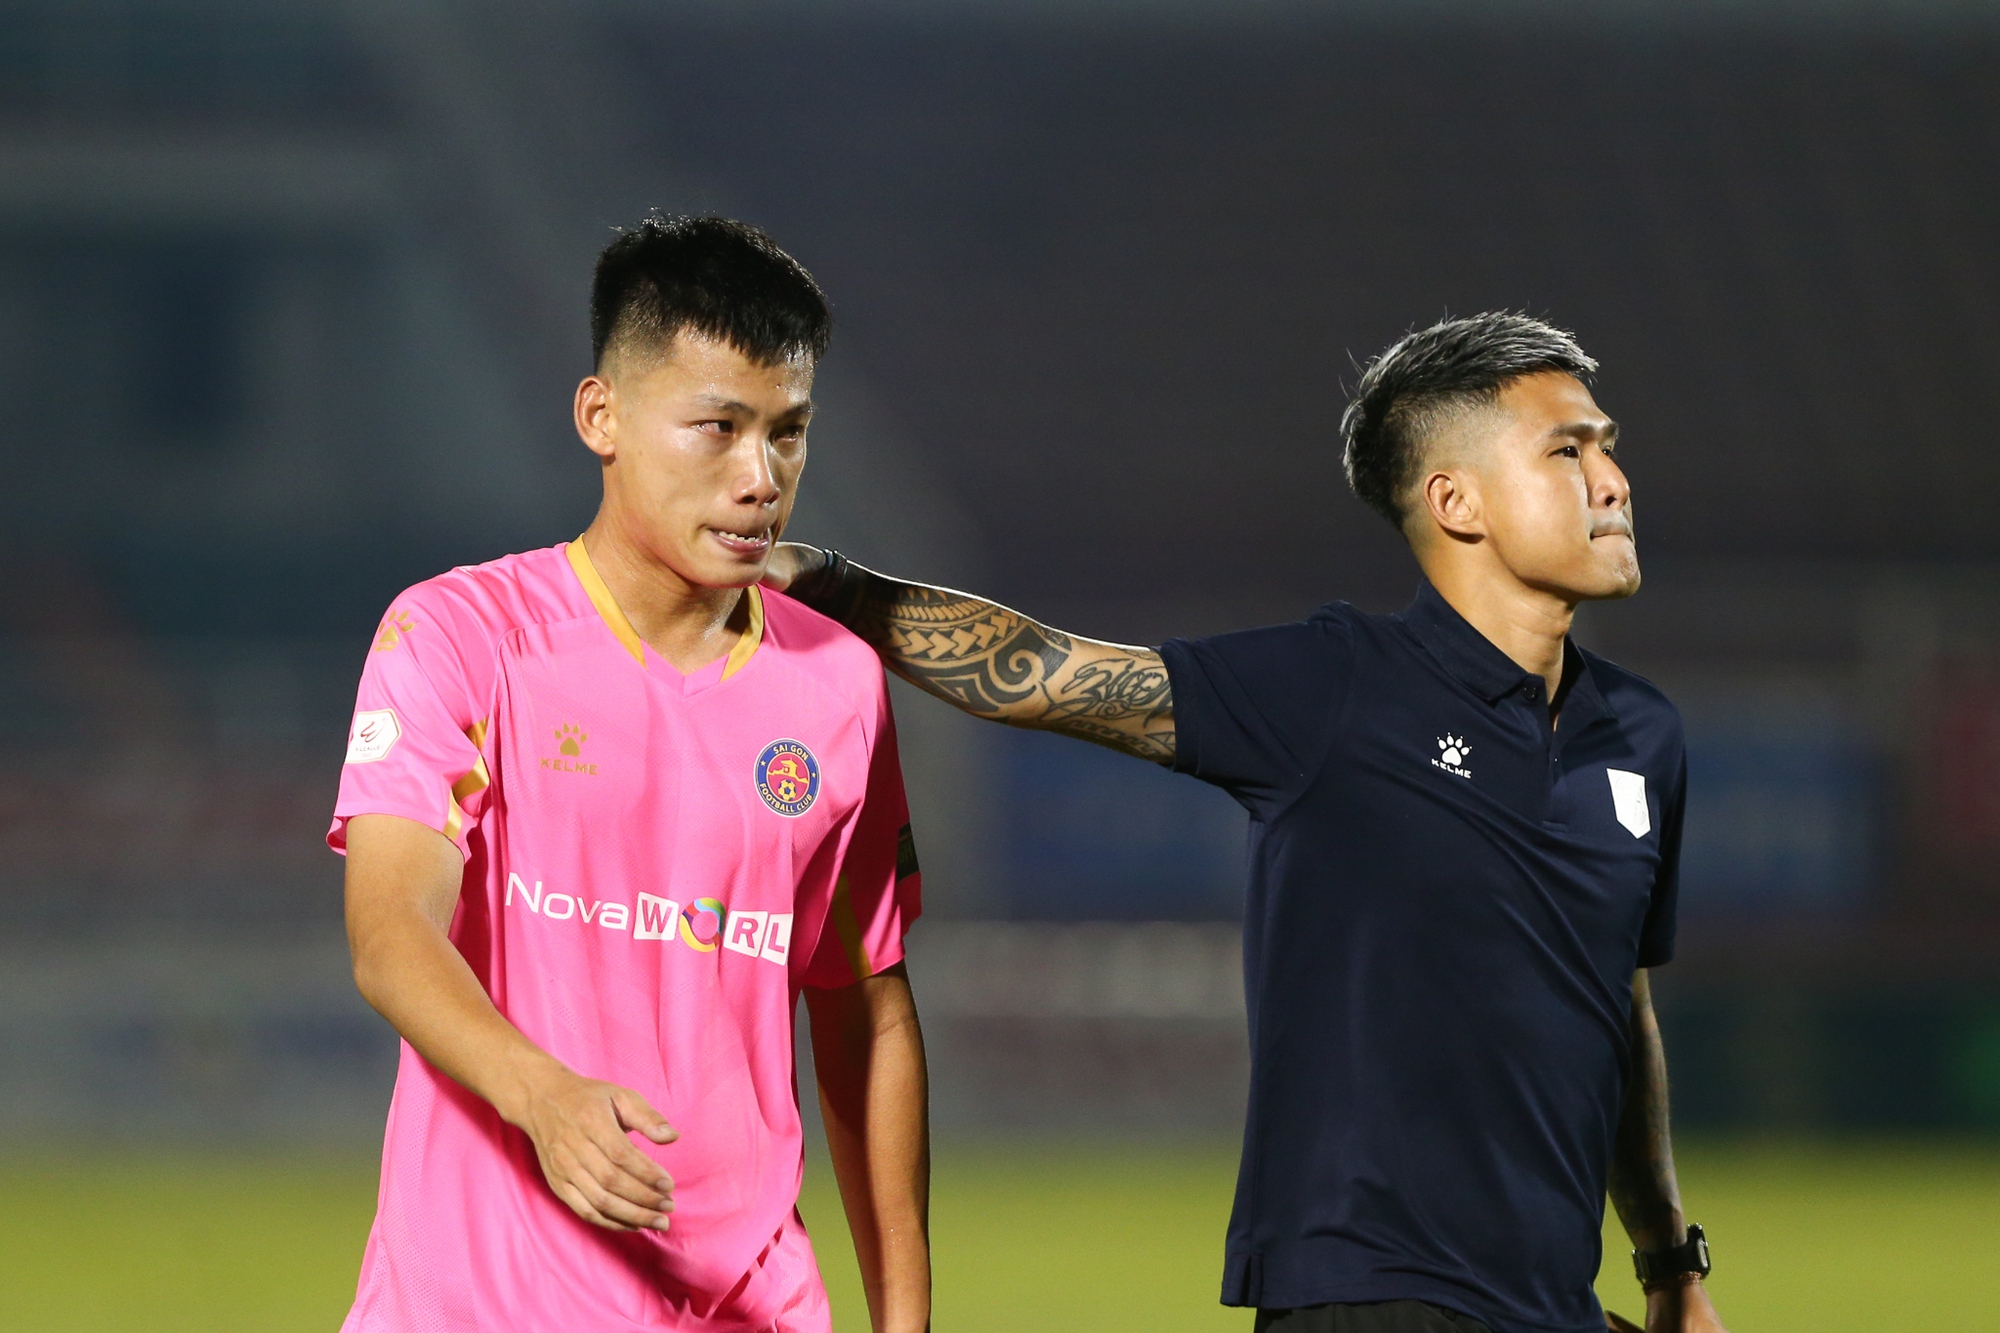 CLB Sài Gòn thanh lý hợp đồng toàn đội ngay trước ngày chính thức xuống hạng-1